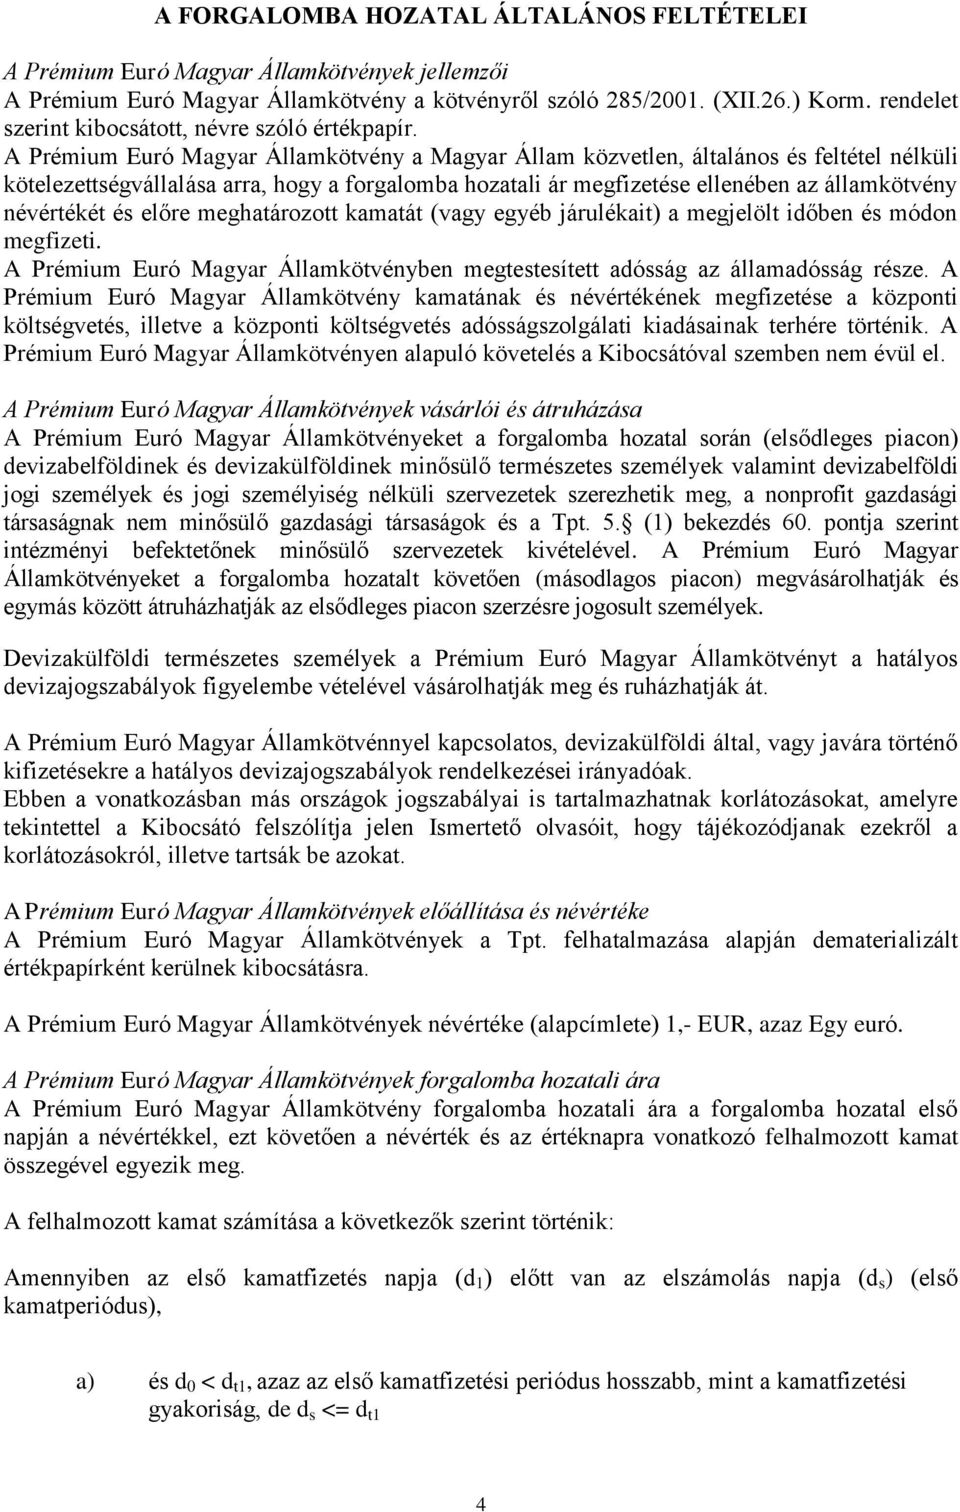 A Prémium Euró Magyar Államkötvény a Magyar Állam közvetlen, általános és feltétel nélküli kötelezettségvállalása arra, hogy a forgalomba hozatali ár megfizetése ellenében az államkötvény névértékét